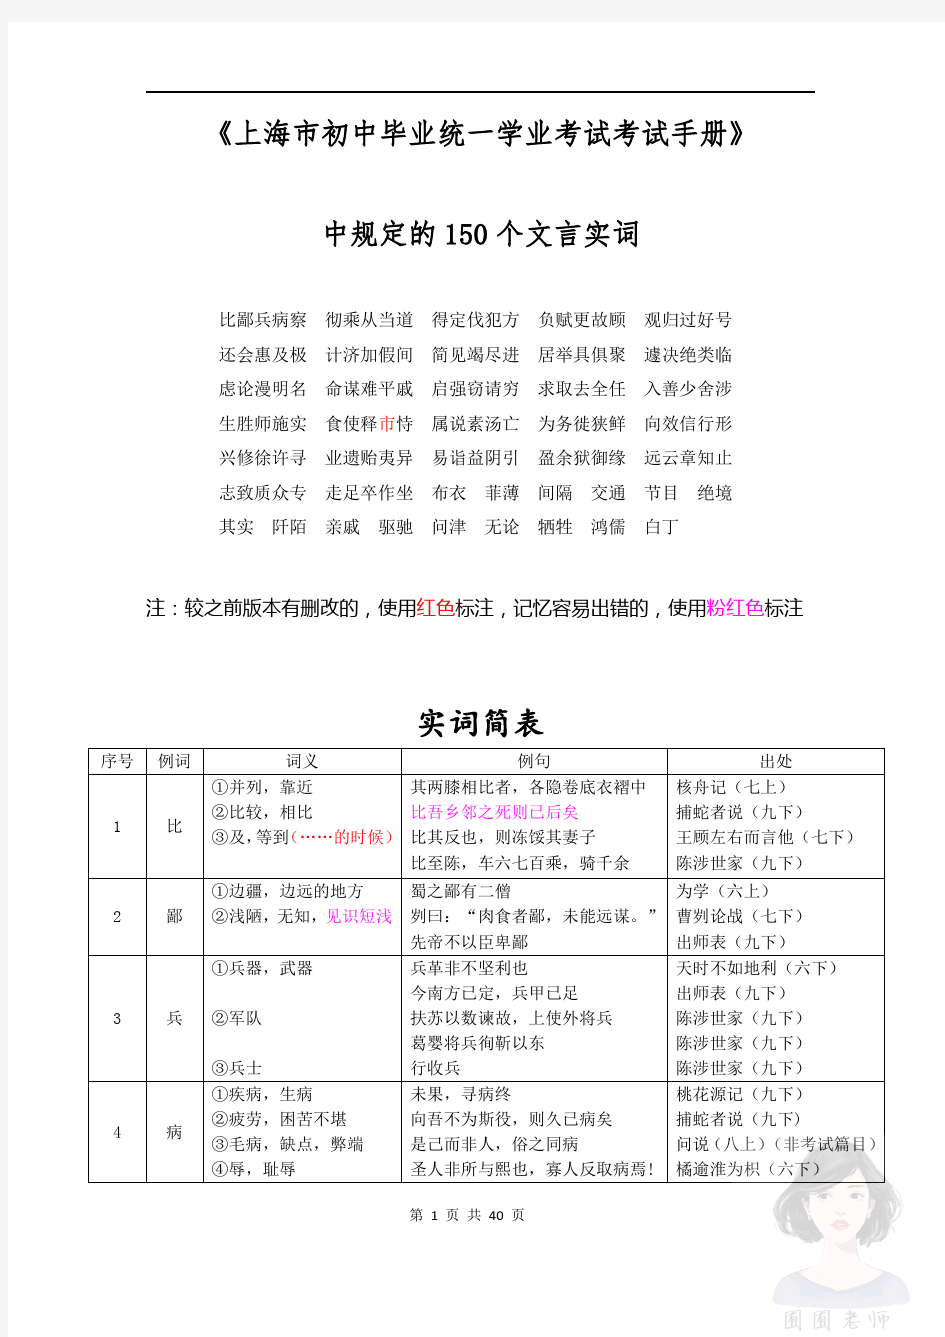 上海中考《考试手册》中规定的150文言实词(150词)【精校版】